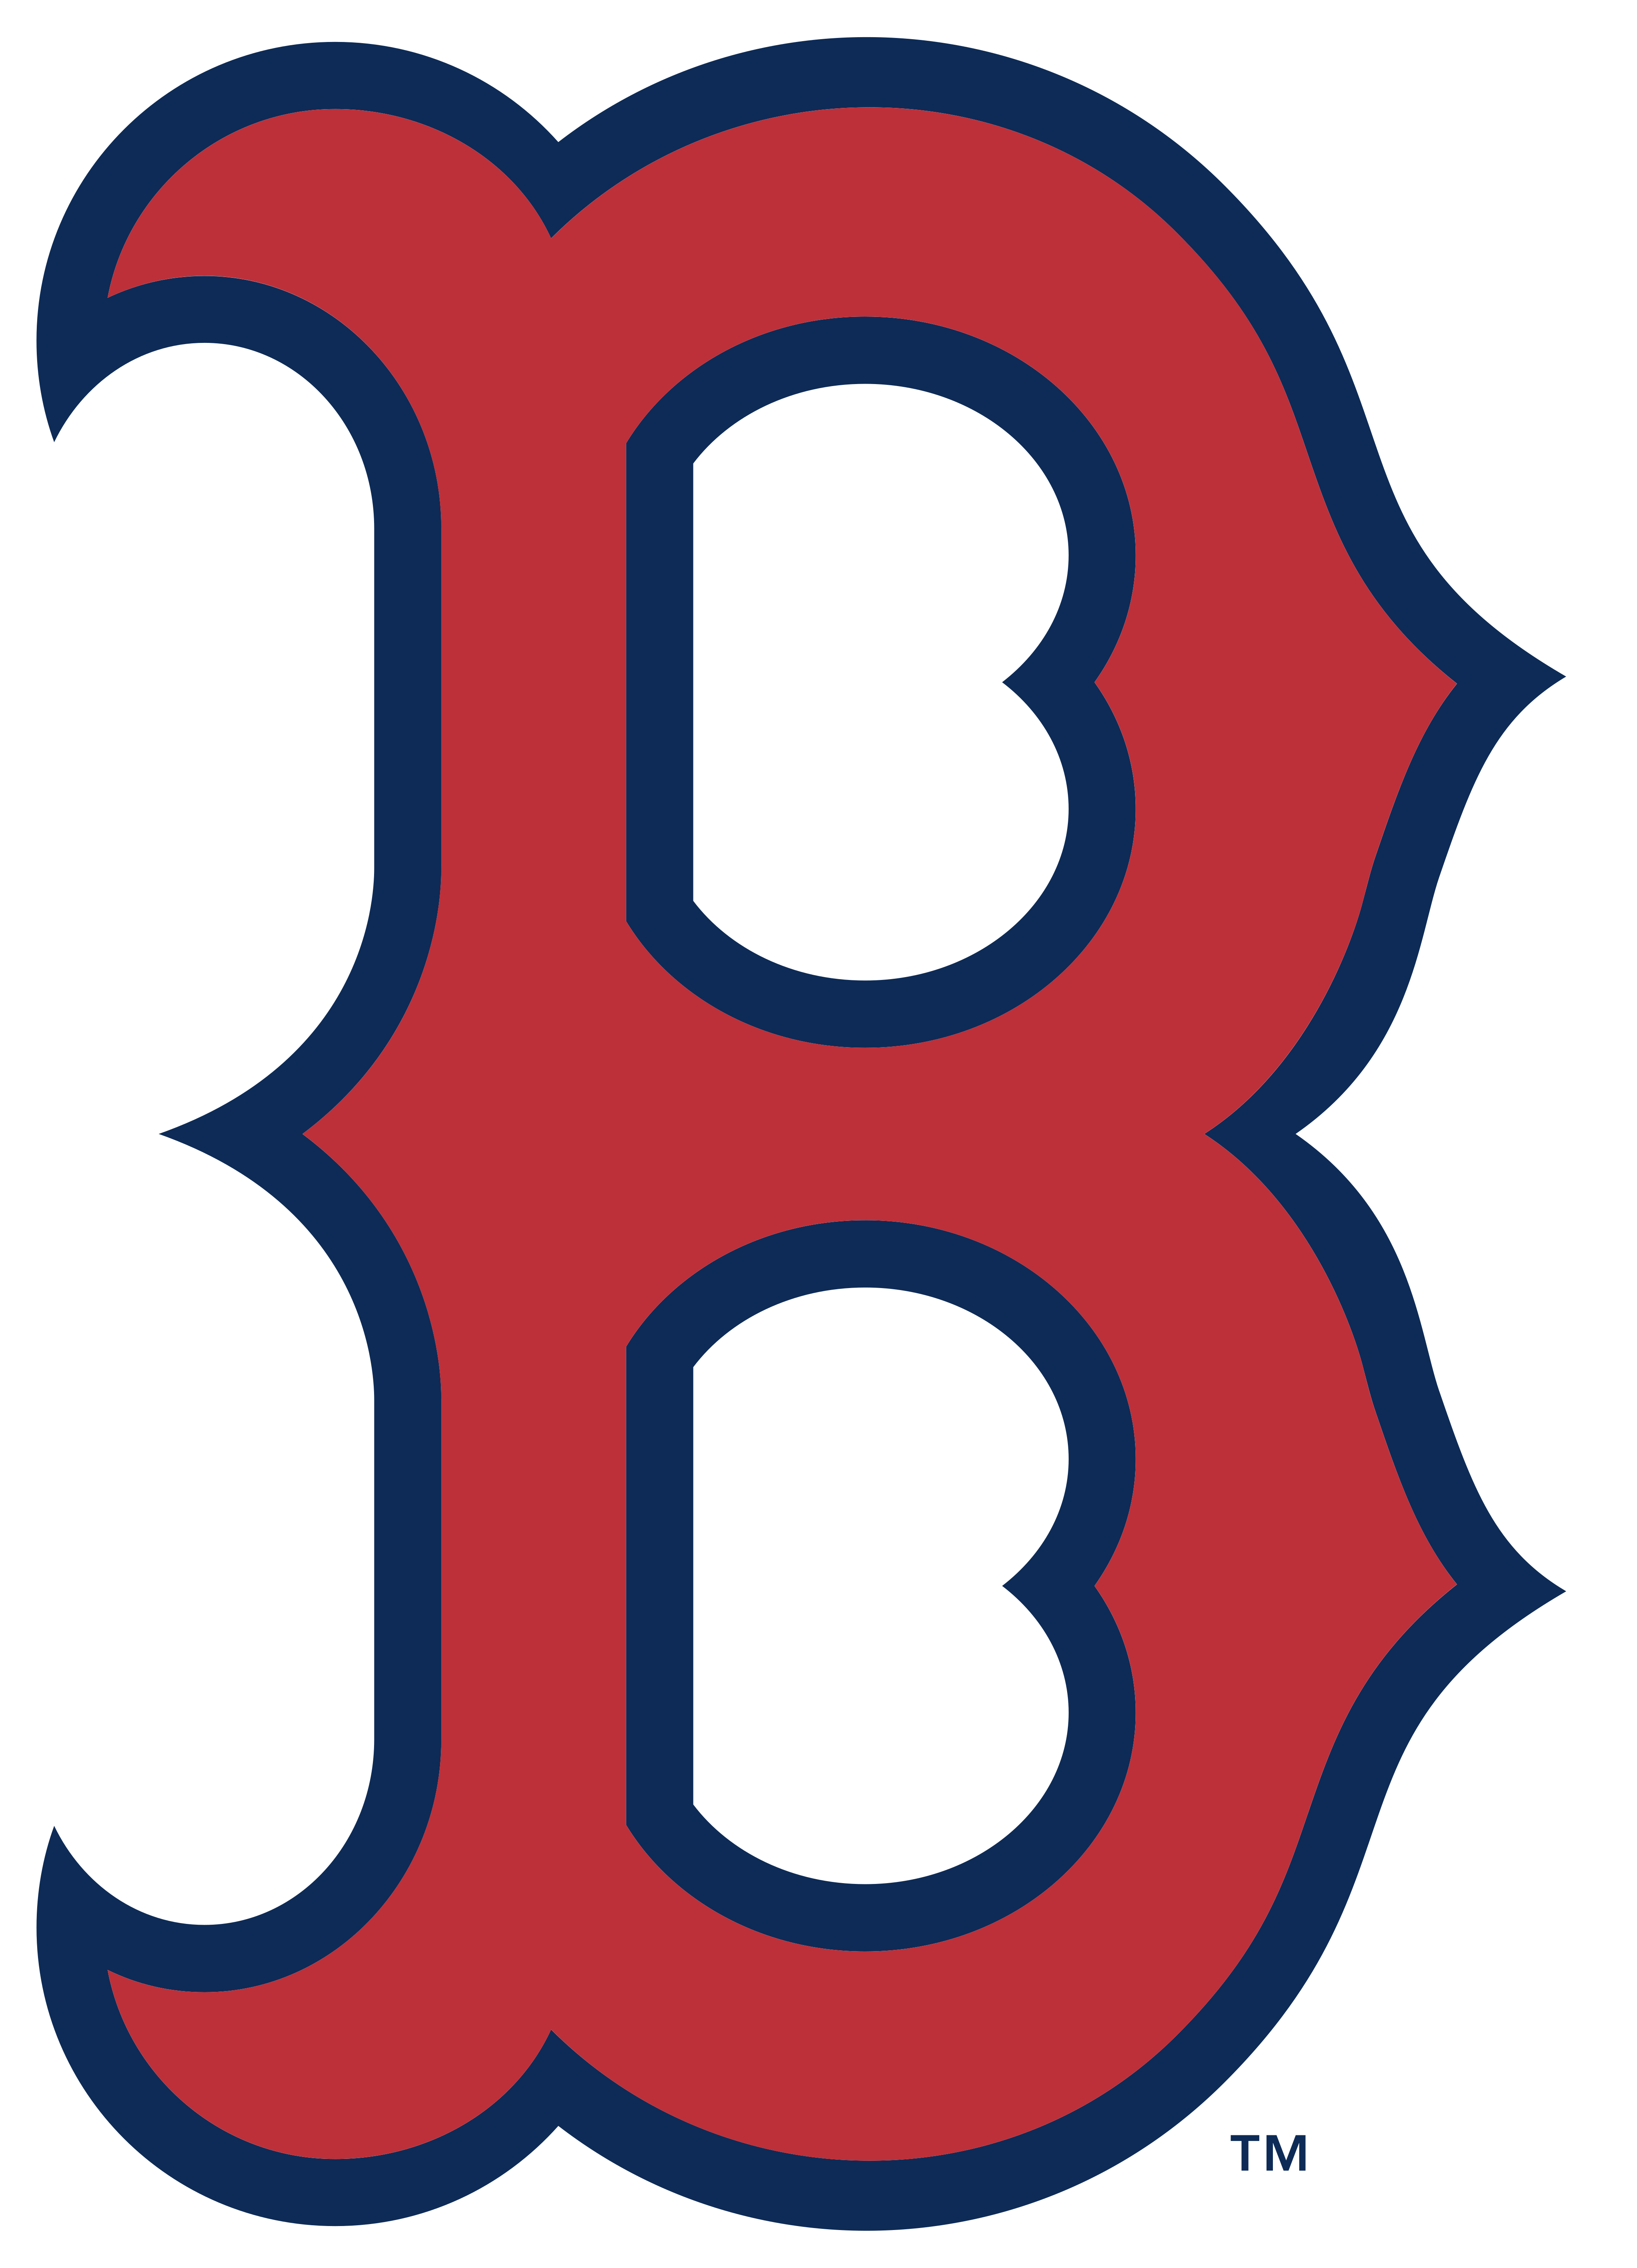 Red Sox Logo PNG Photos